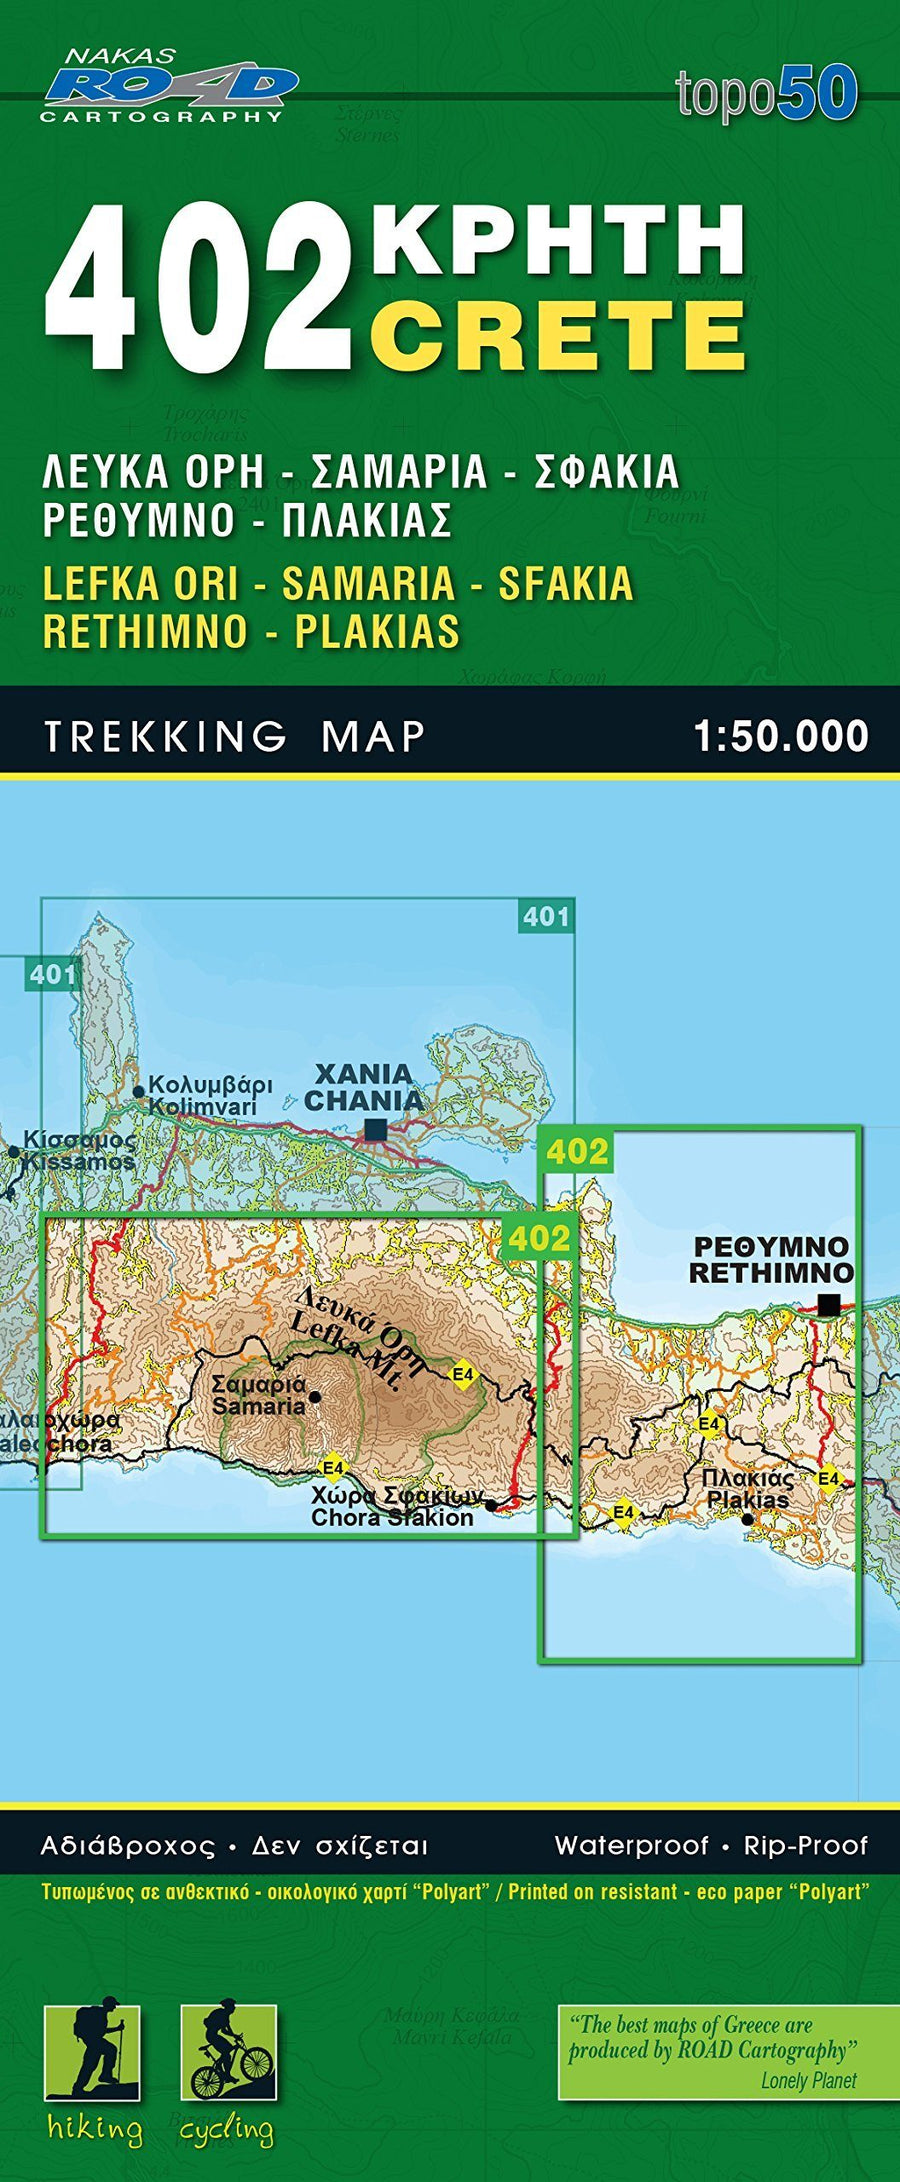 Carte de randonnée n° 402 - Crète : Lefka Ori, Samaria, Sfakia, Rethymno, Plakias | Road Editions carte pliée Road Editions 